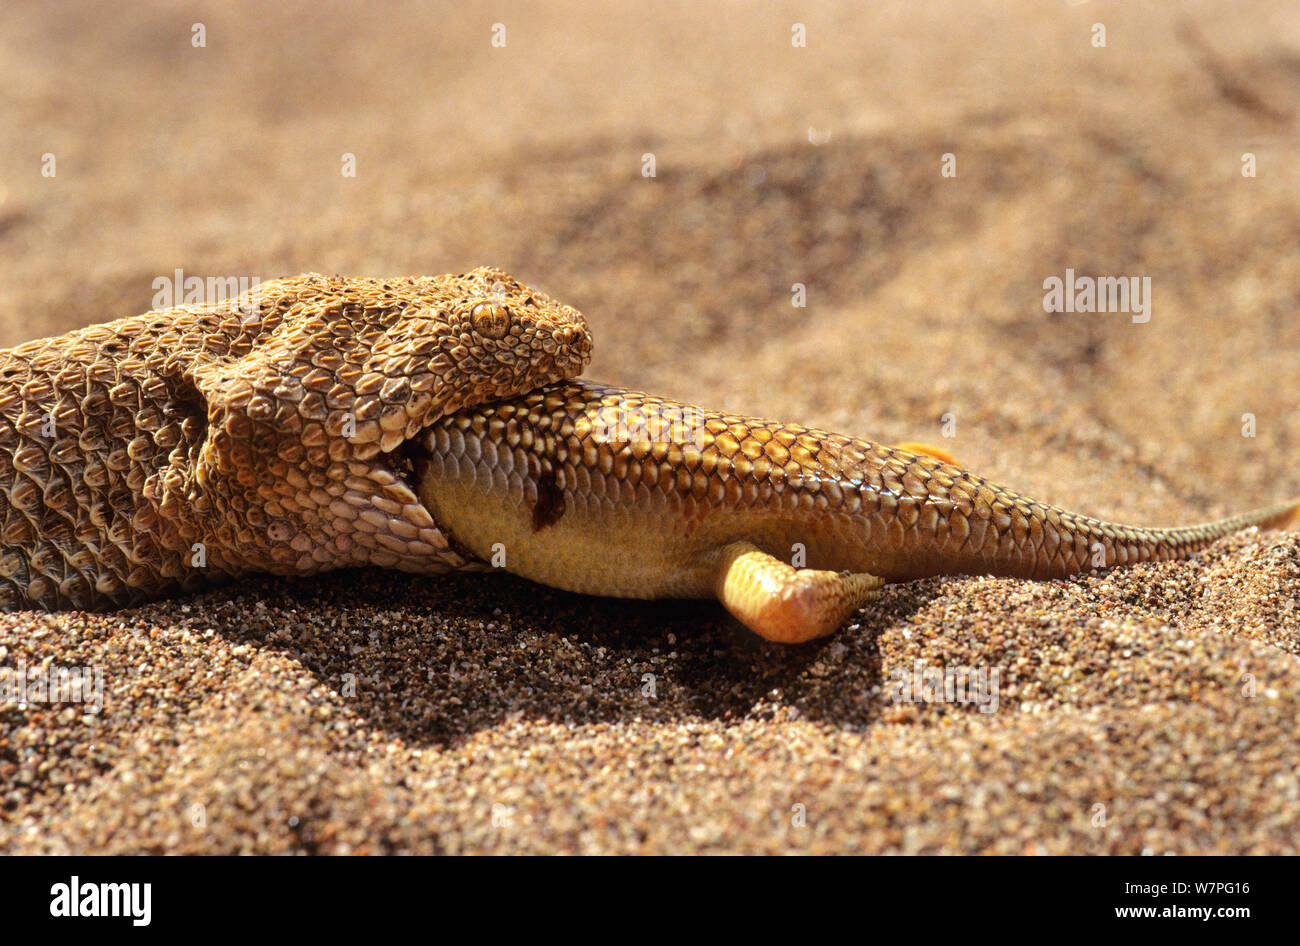 Sand Viper (Cerastes vipera) eating Sandfish  (Scincus albifasciatus) Erg Chigaga, Morocco Controlled conditions Stock Photo